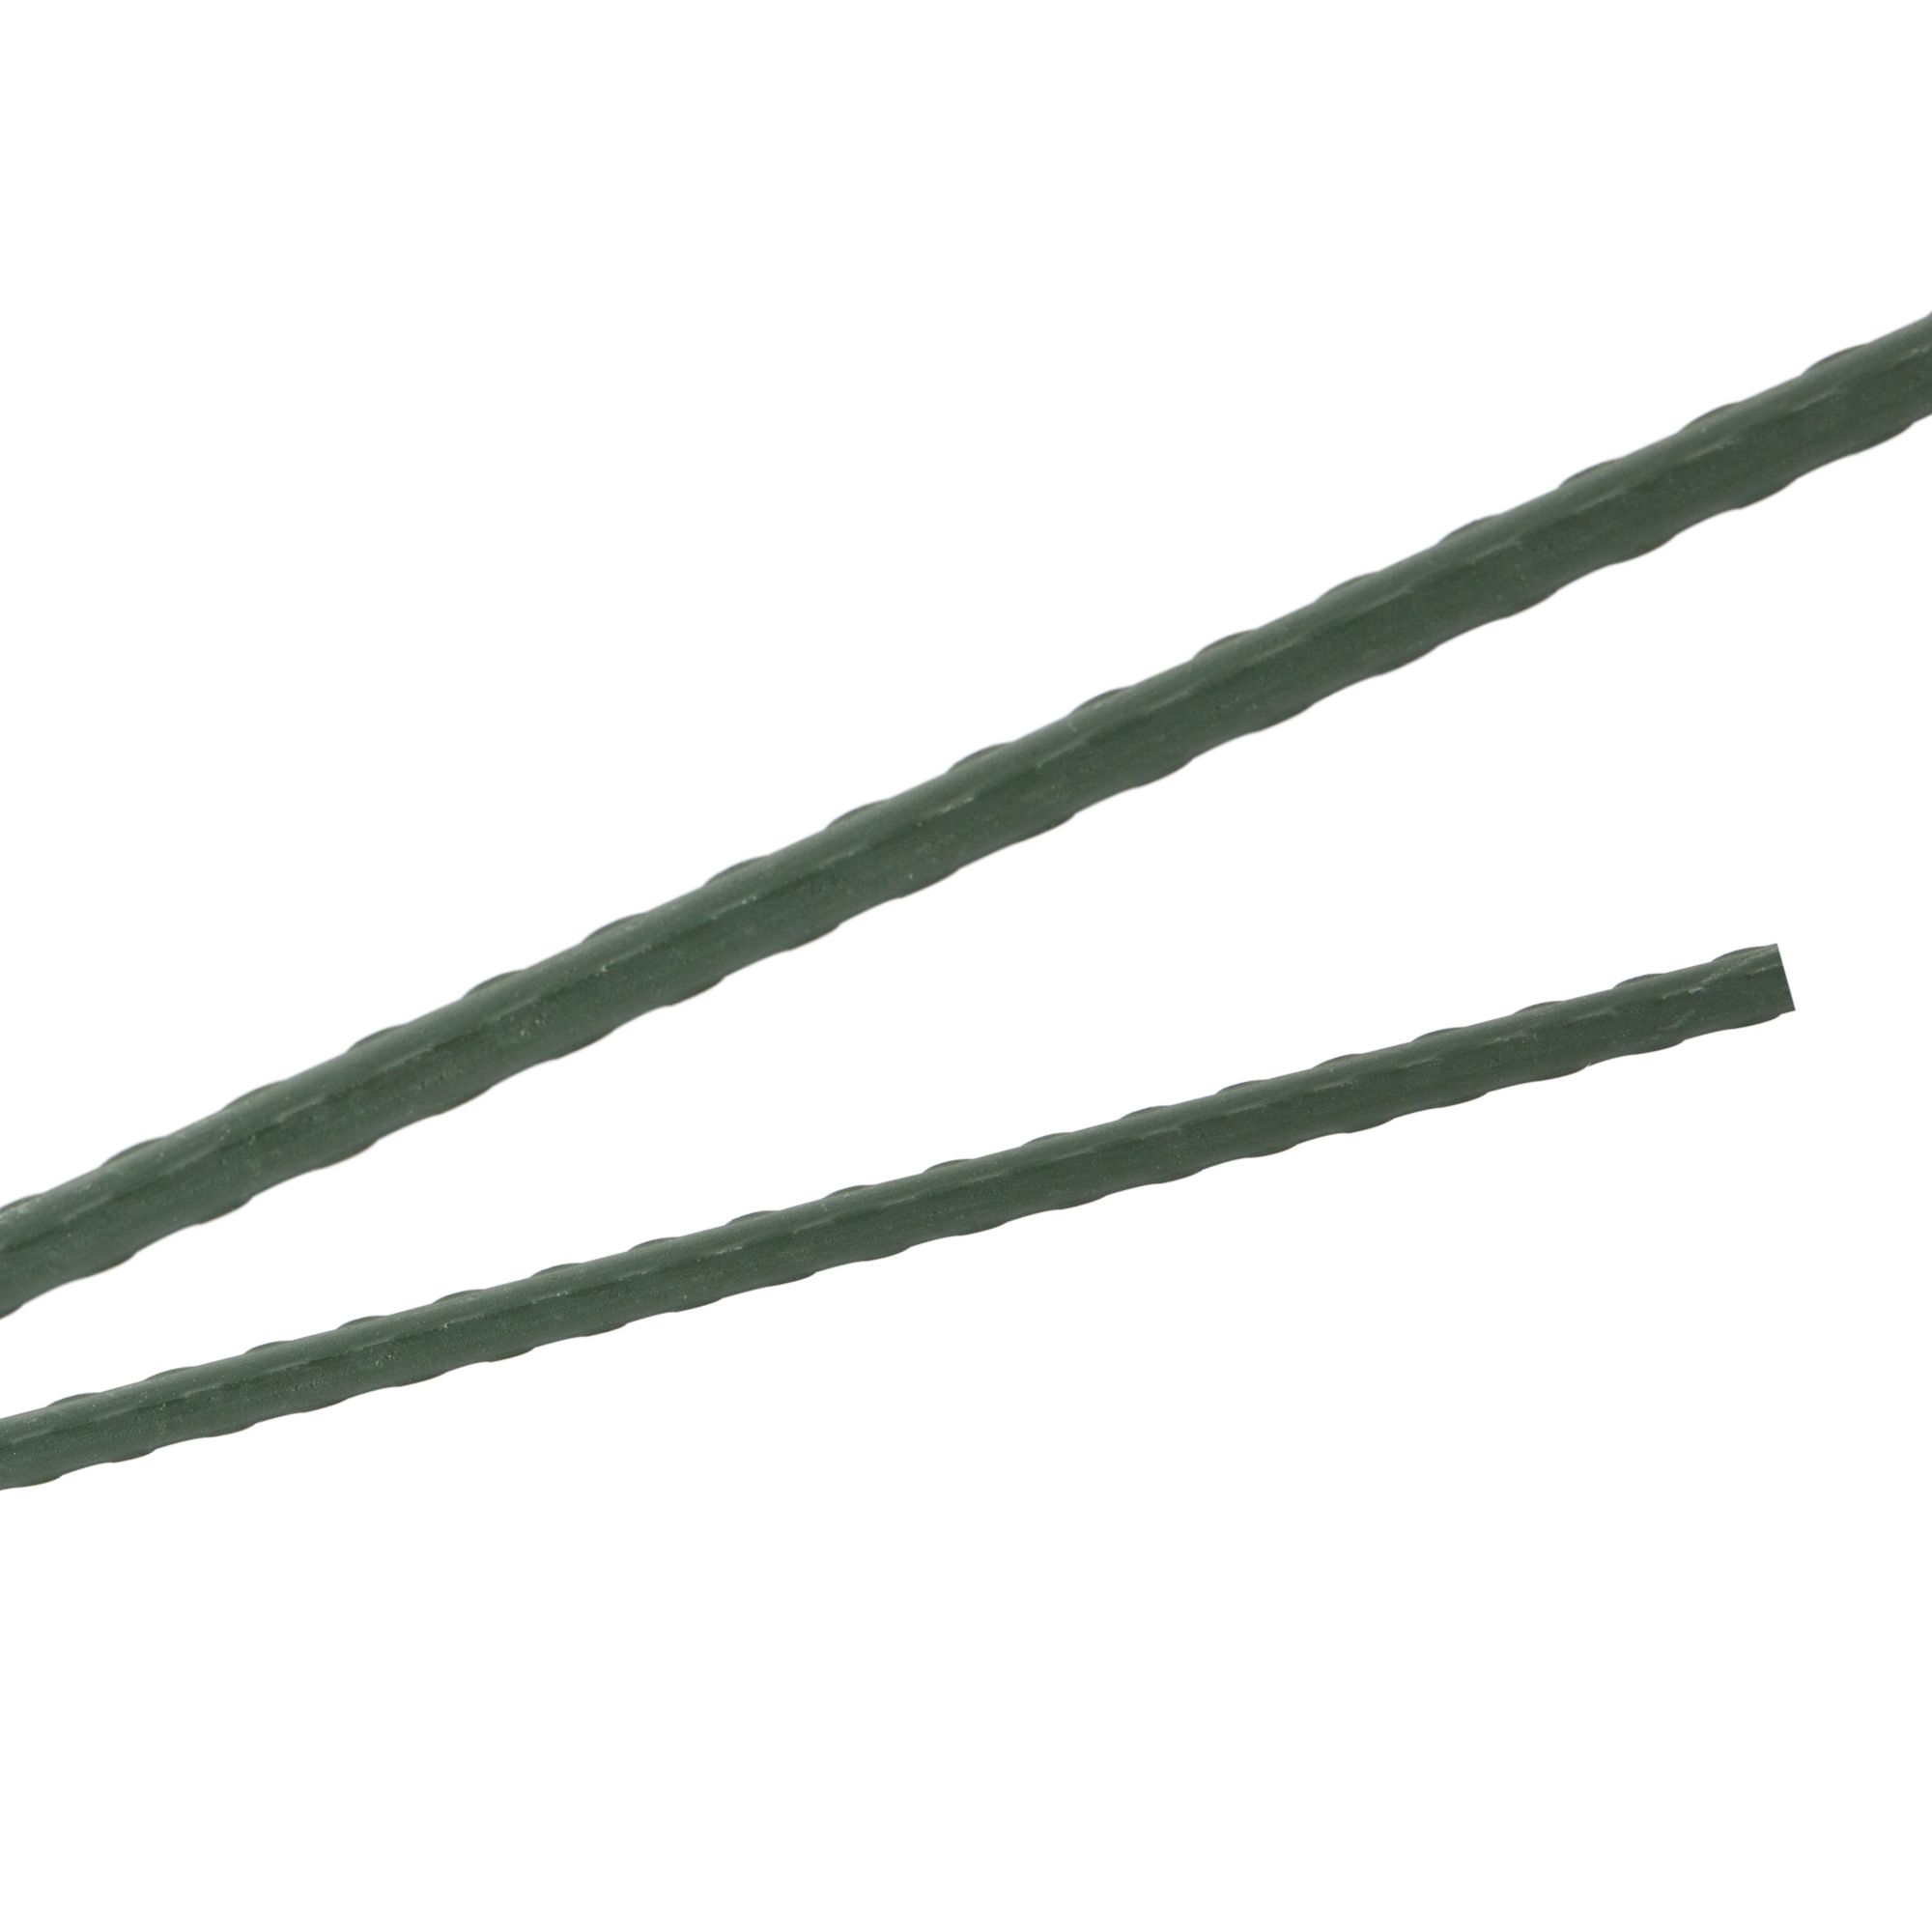 Tyč podpěrná, 11mm, 120cm, kov+PVC, zelená 0.088000 Kg GIGA Sklad20 45654 25